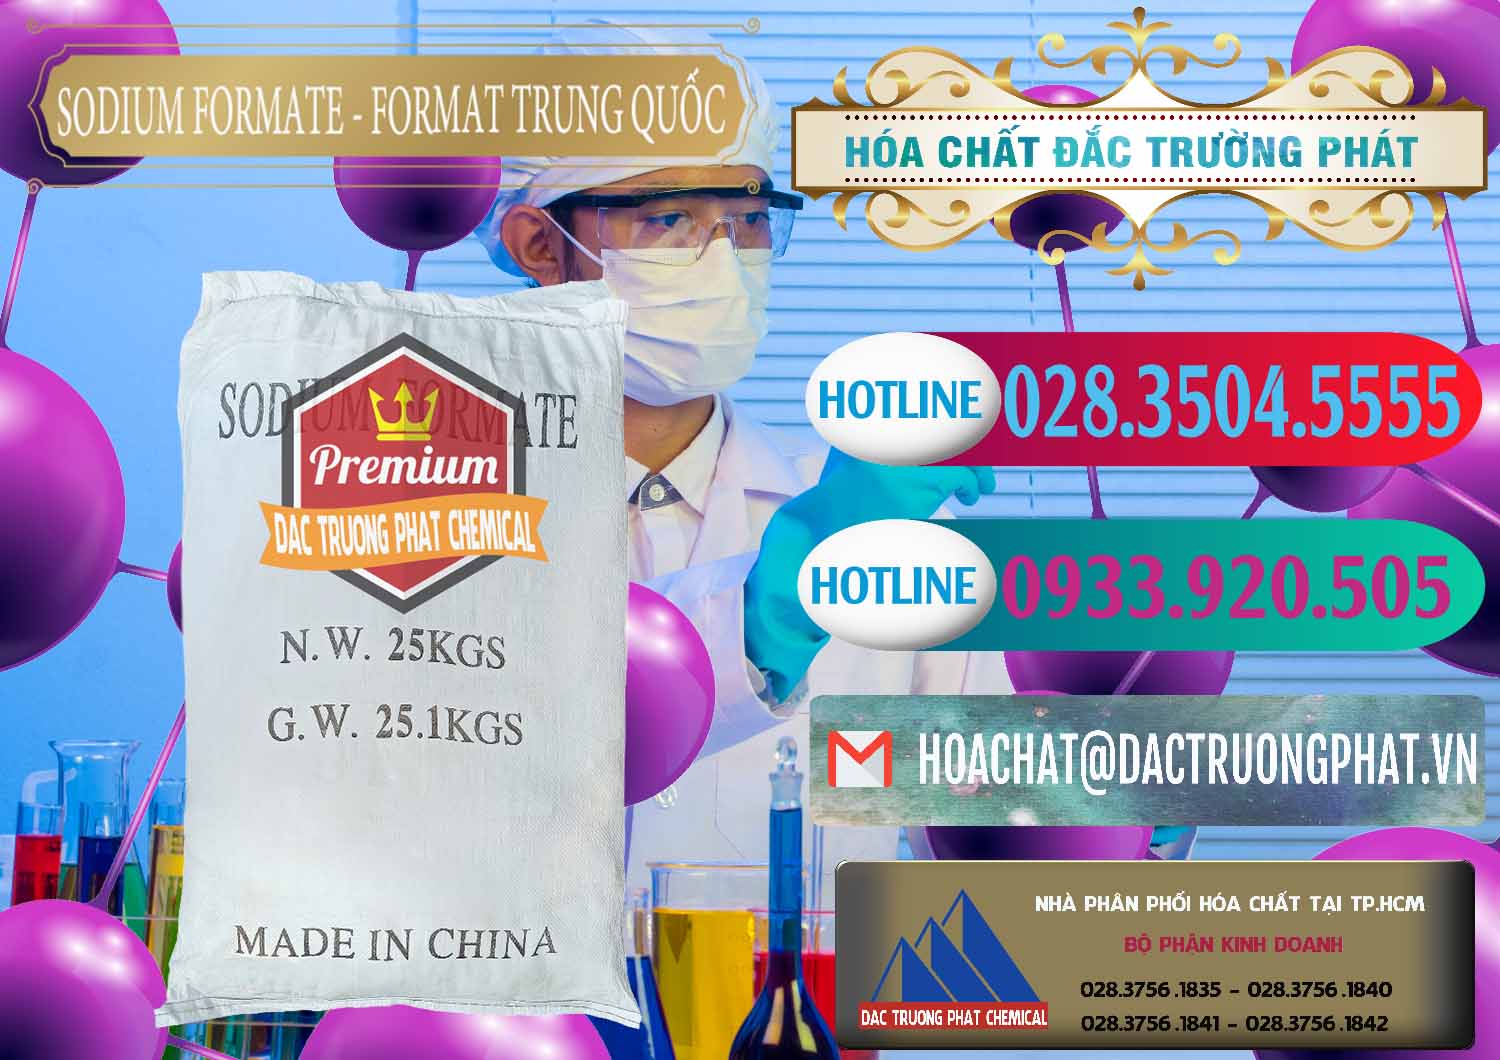 Nơi chuyên bán & cung ứng Sodium Formate - Natri Format Trung Quốc China - 0142 - Công ty chuyên cung ứng - phân phối hóa chất tại TP.HCM - truongphat.vn